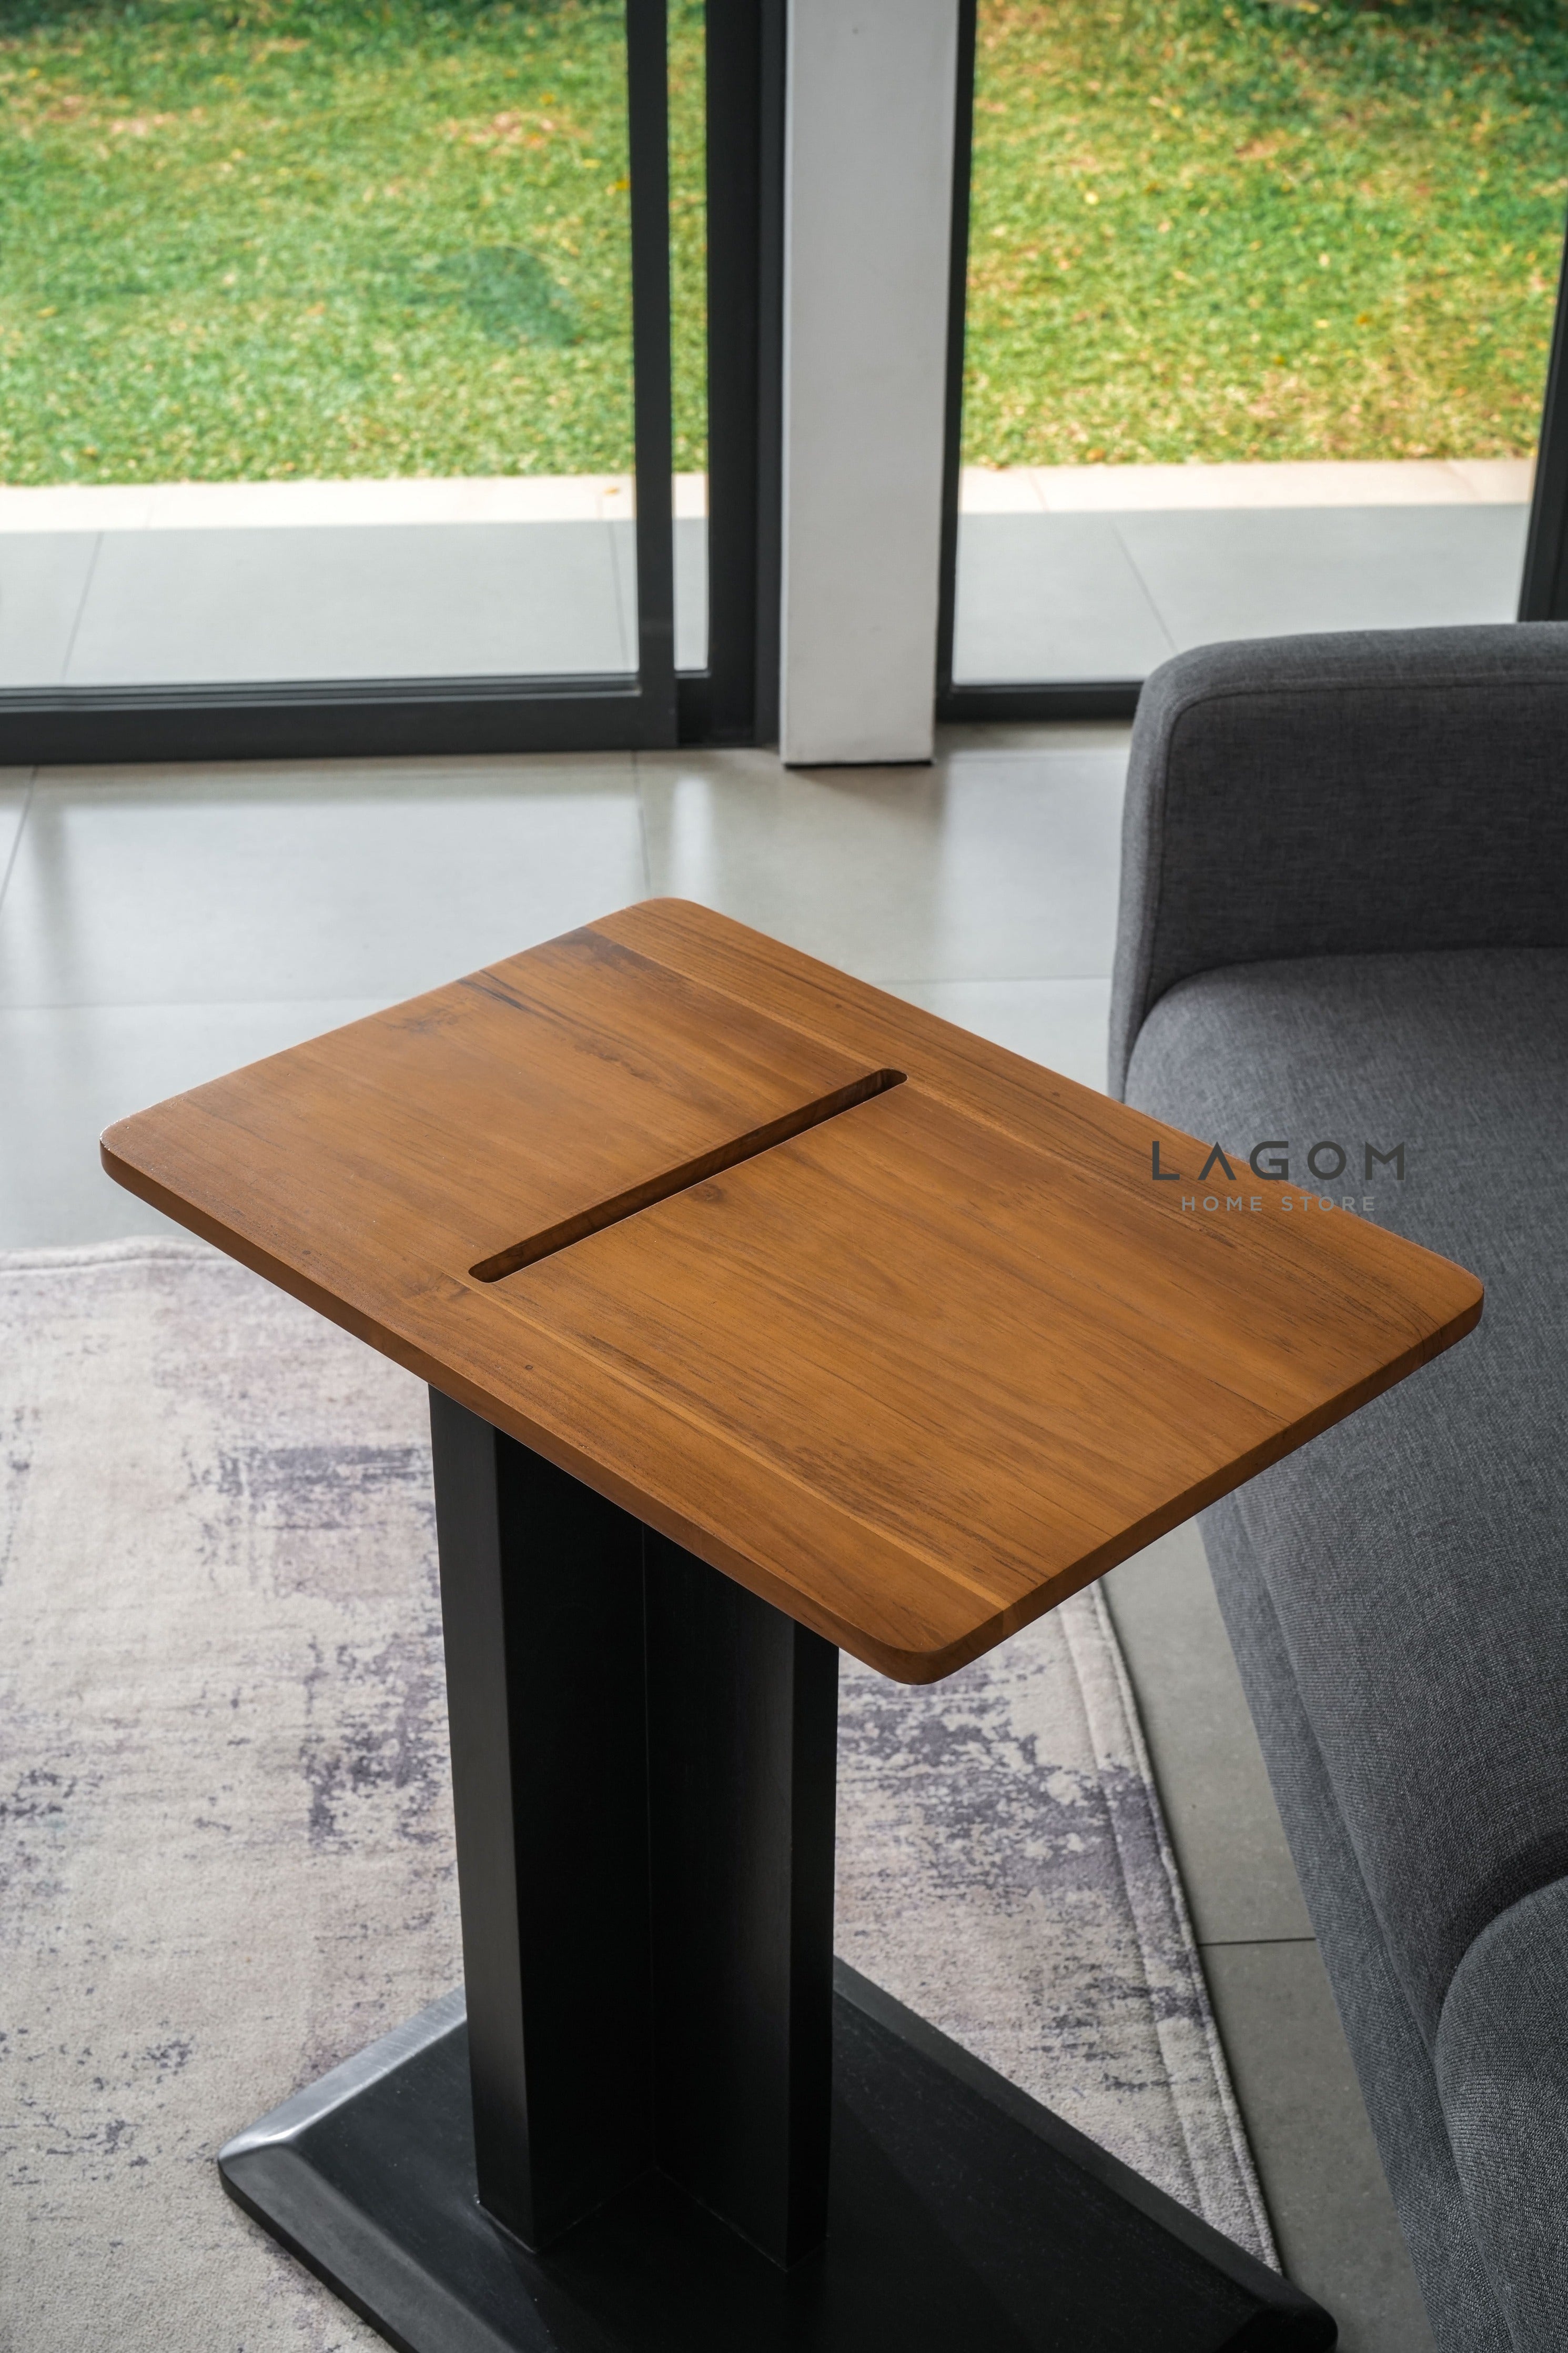 Meja Samping dengan Slot HP dan iPad dari Kayu Jati Side Table Lagom Home Store Jati Furnitur Teak Furniture Jakarta